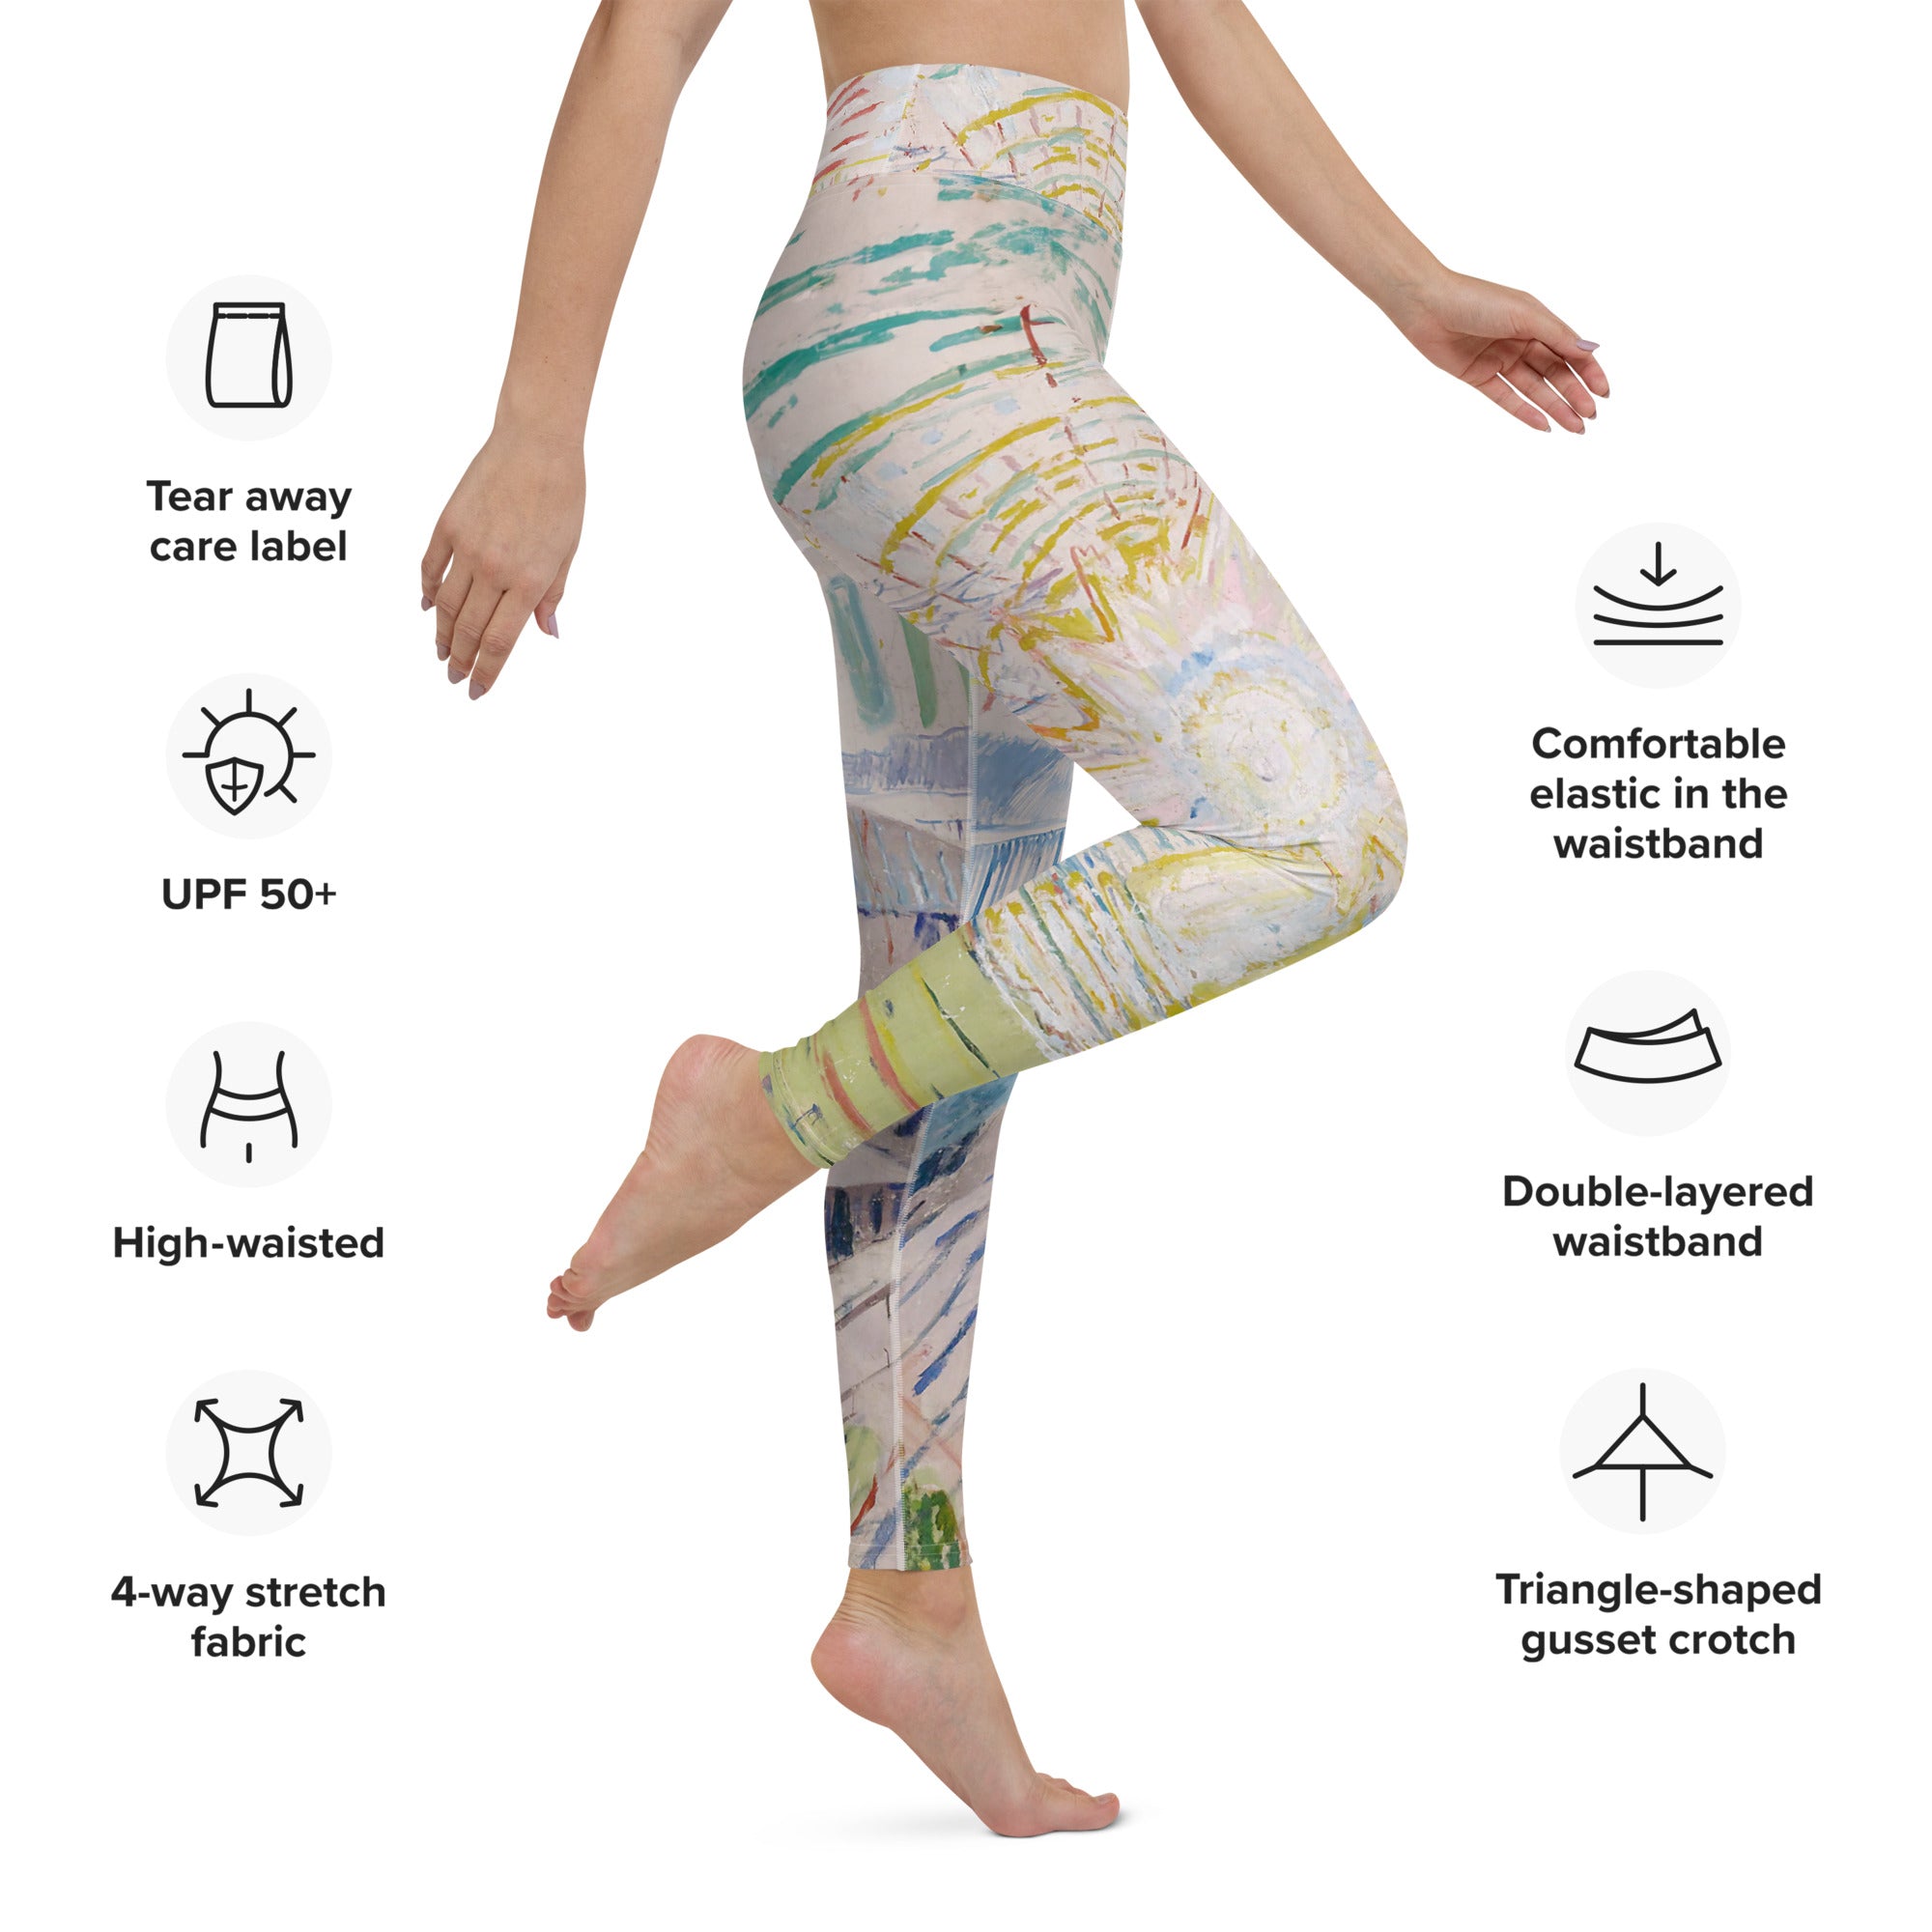 Edvard Munch „Die Sonne“ Berühmtes Gemälde Yoga-Leggings | Premium Art Yoga-Leggings